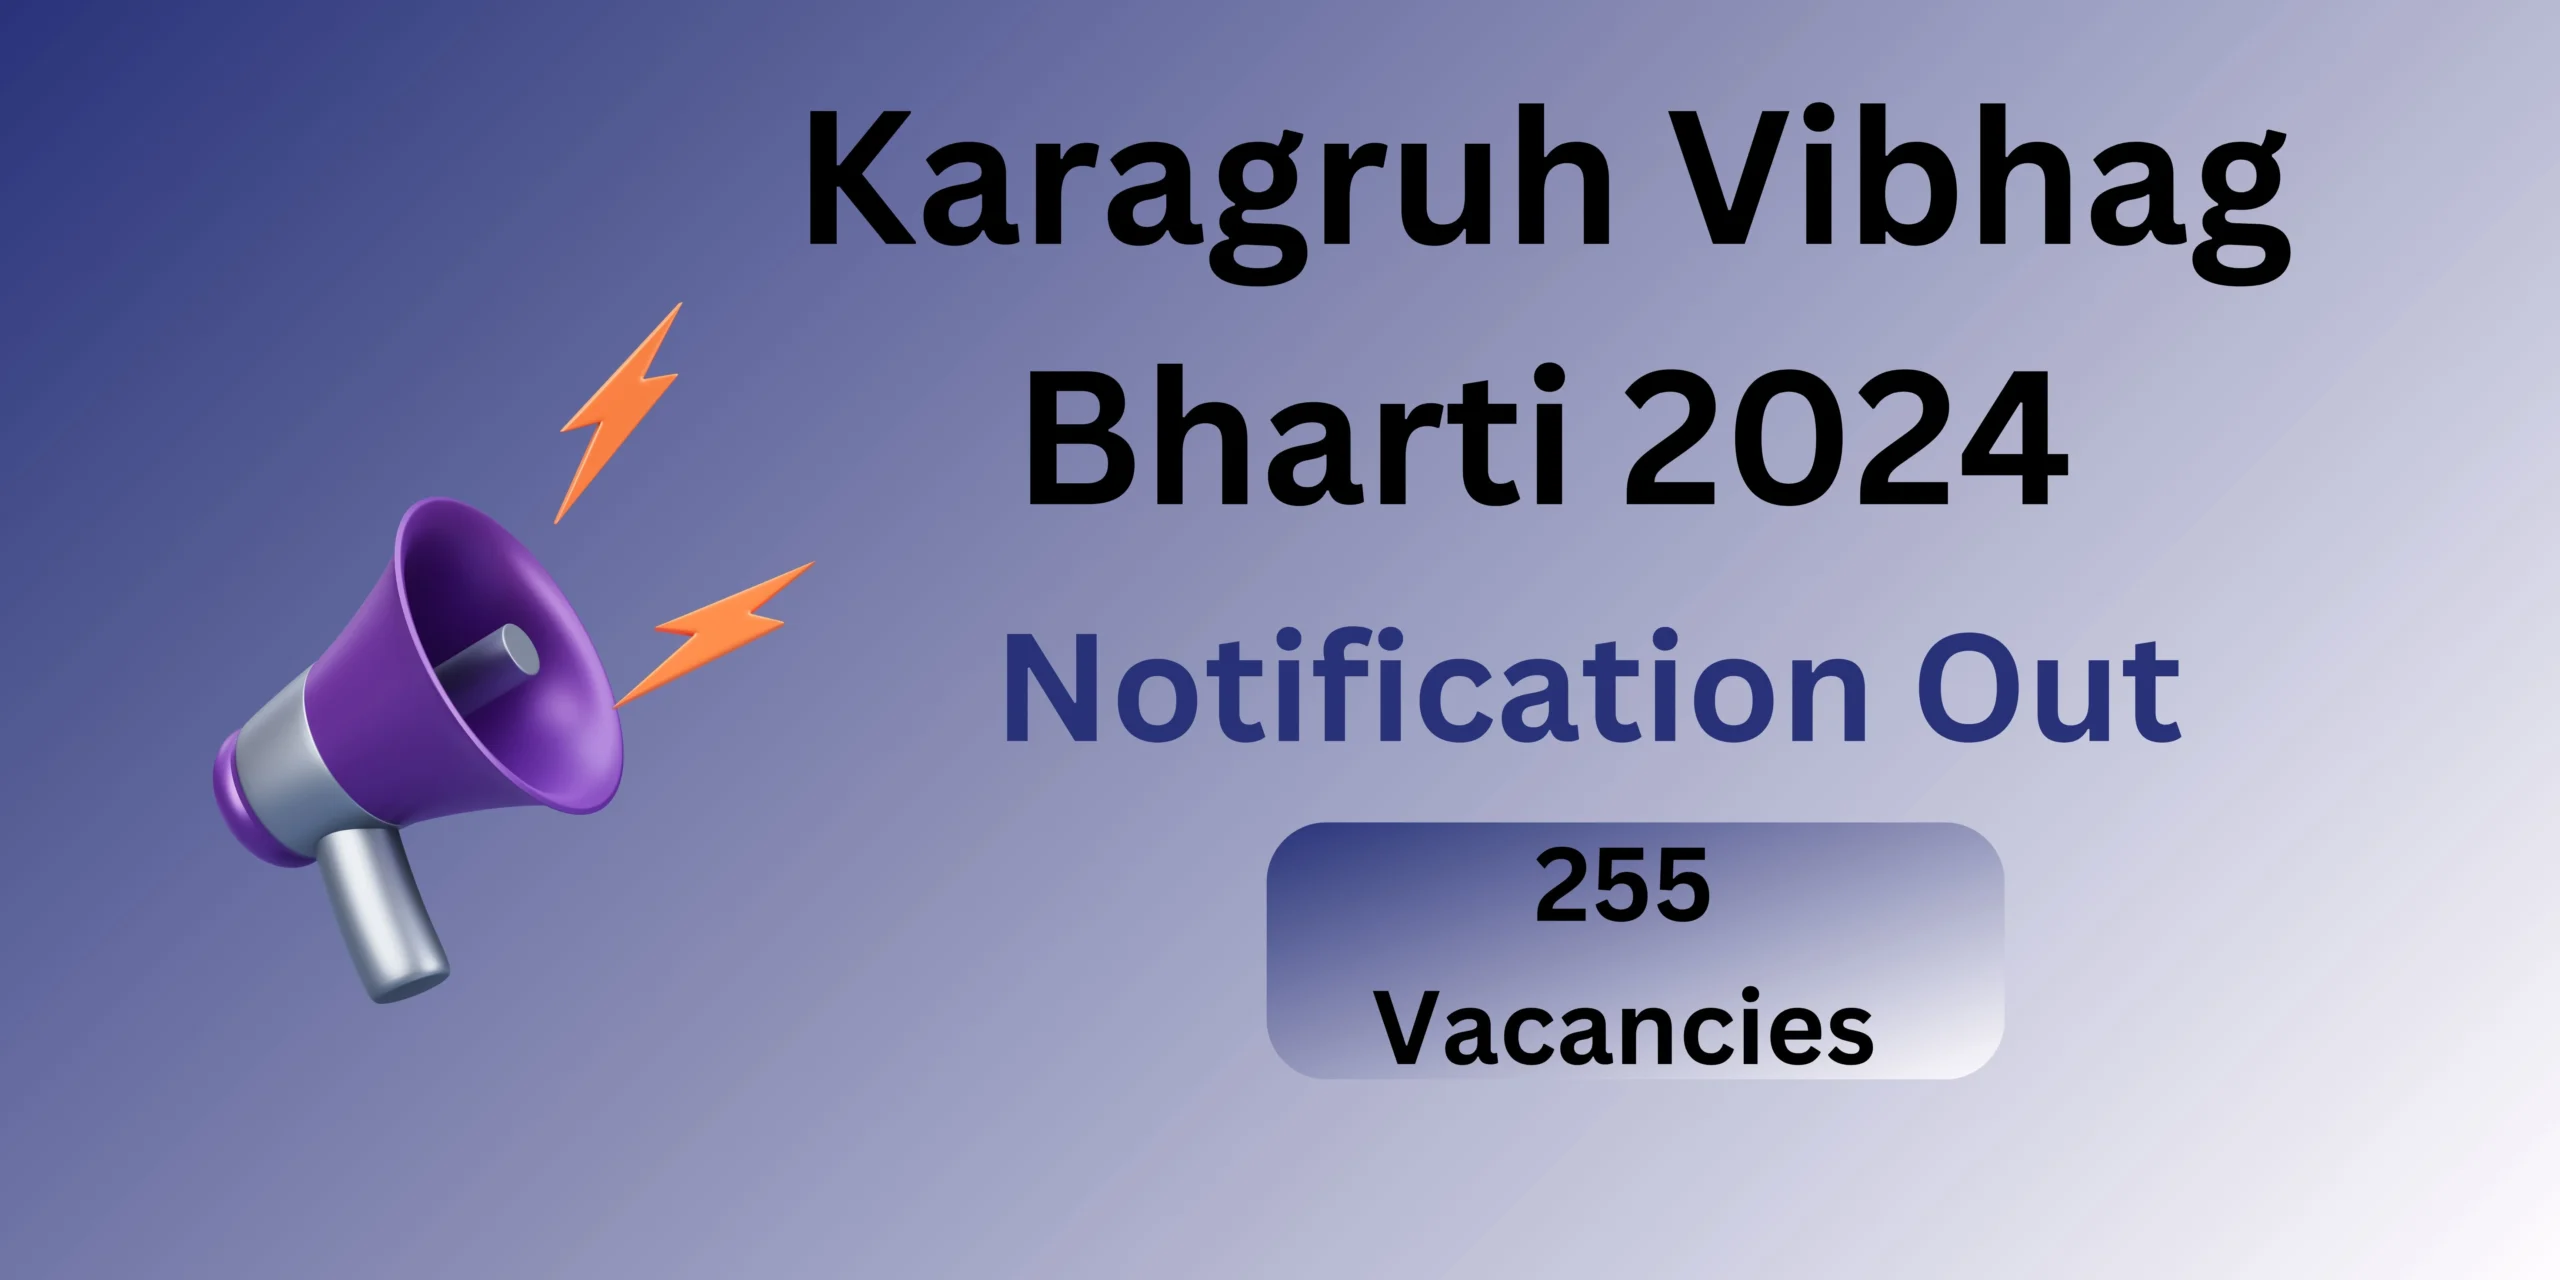 Karagruh Vibhag Bharti 2024